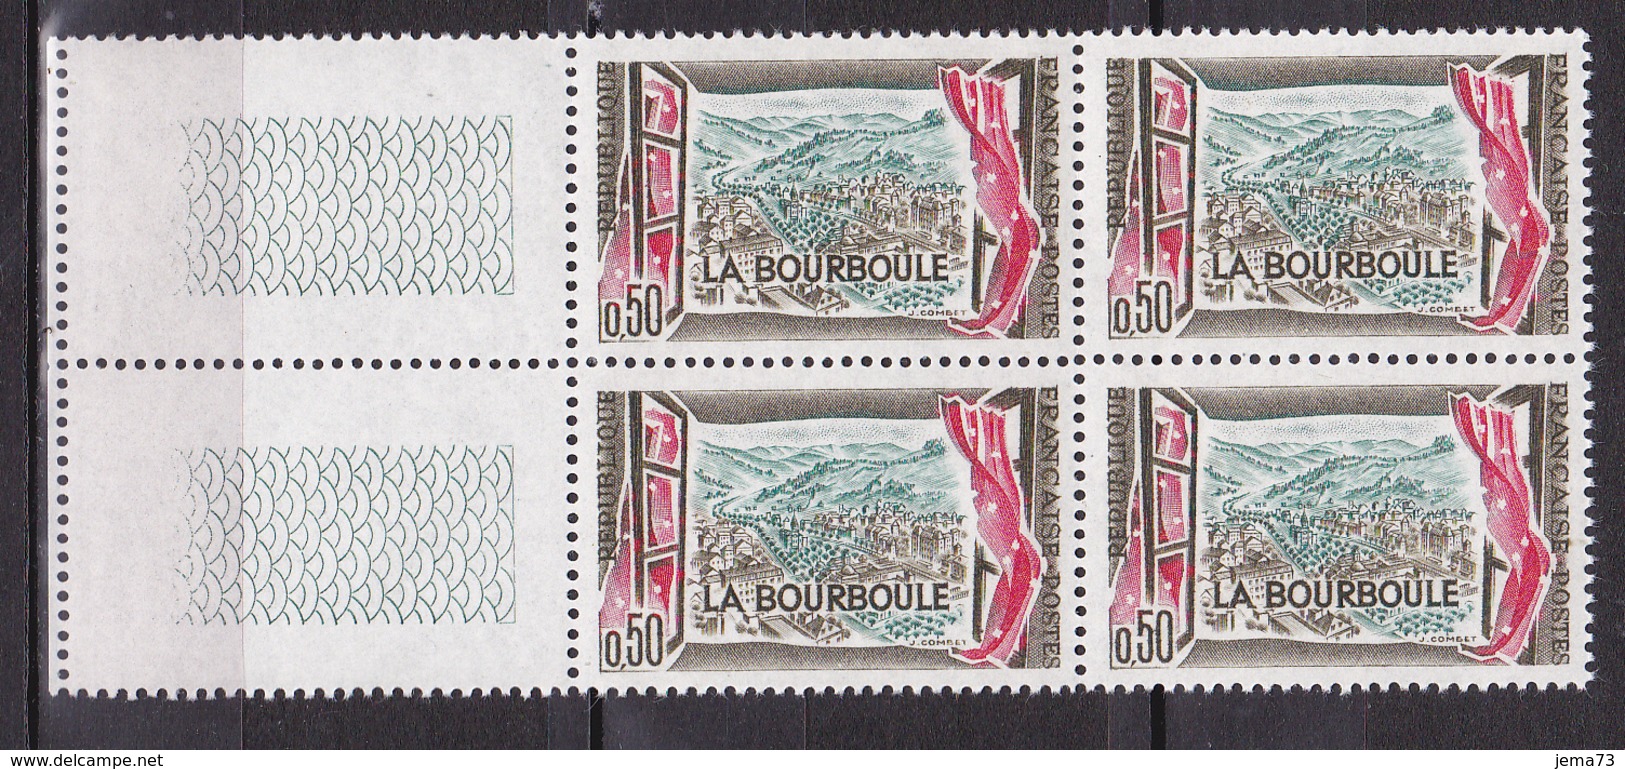 N° 1256 Station Thermale De La Bourboule:  Beau Bloc De 4 Timbres Neuf Impeccable - Unused Stamps